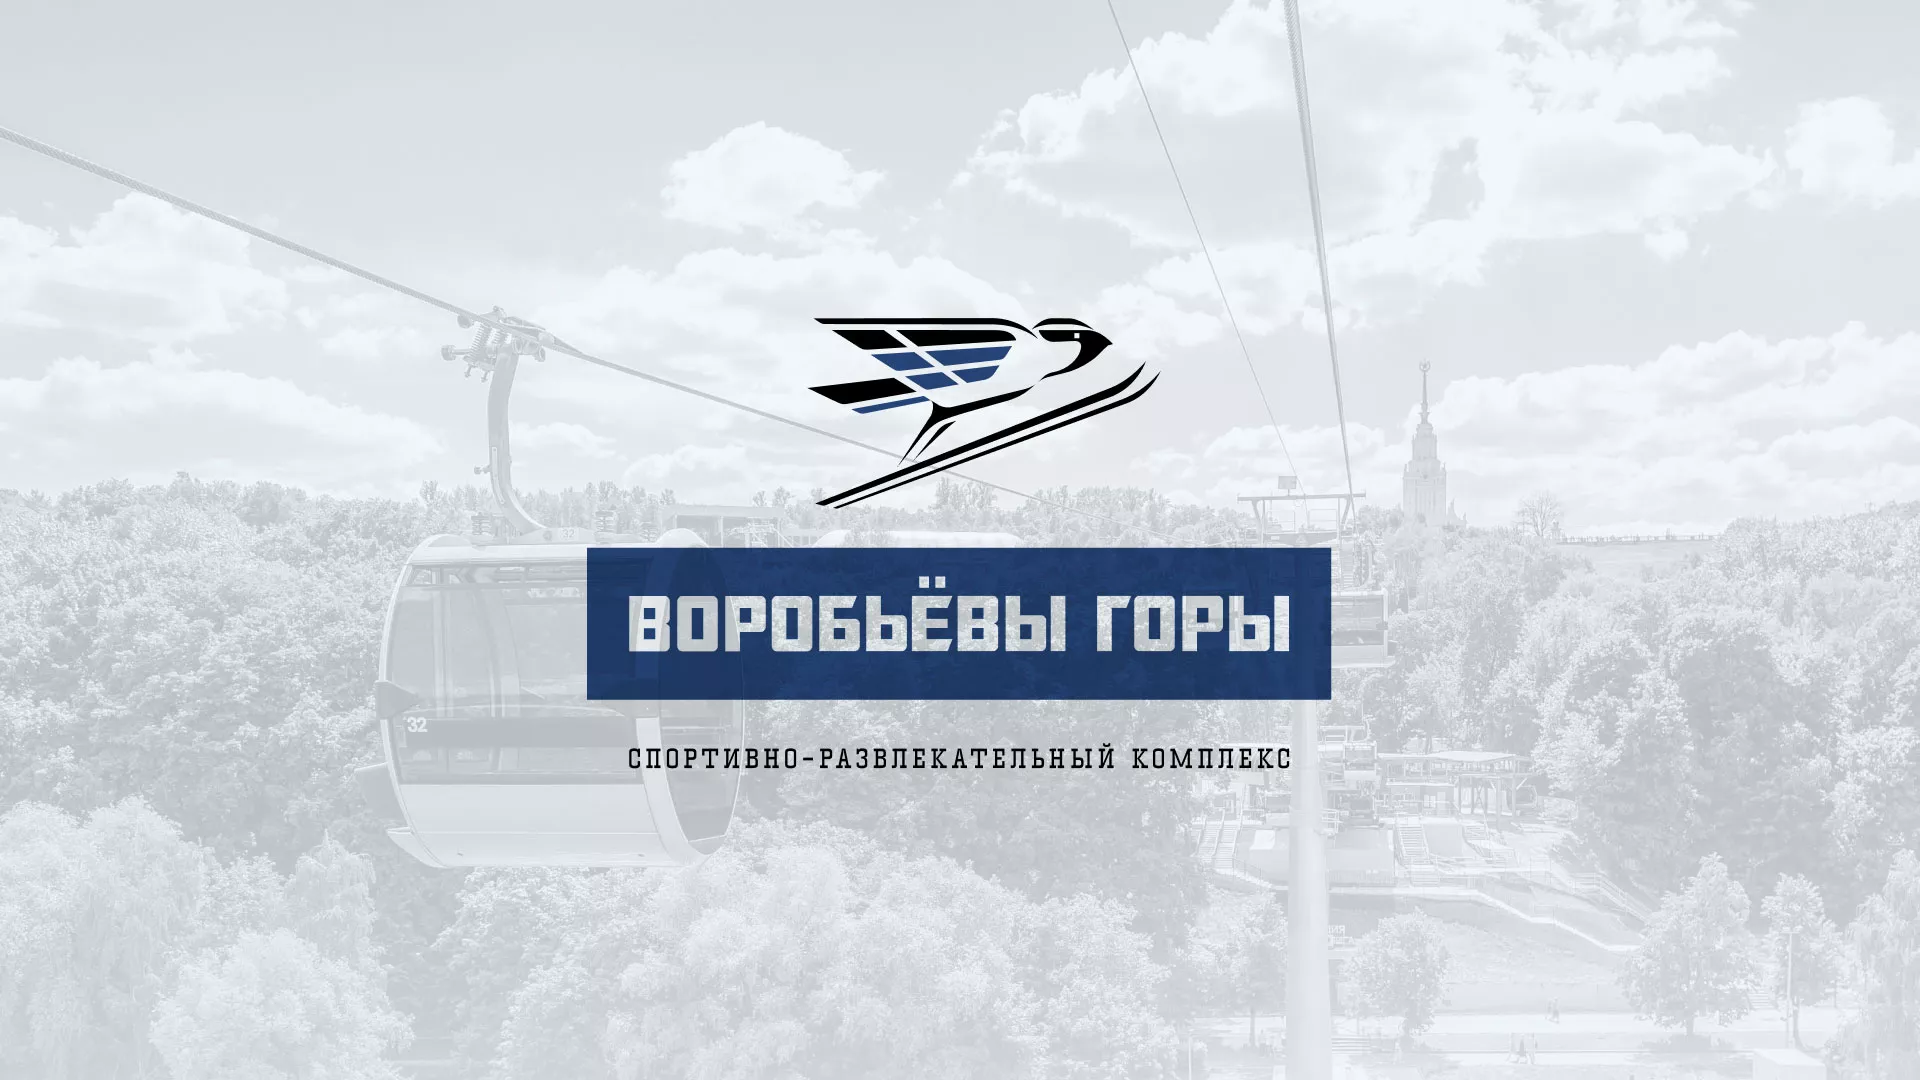 Разработка сайта в Вилючинске для спортивно-развлекательного комплекса «Воробьёвы горы»